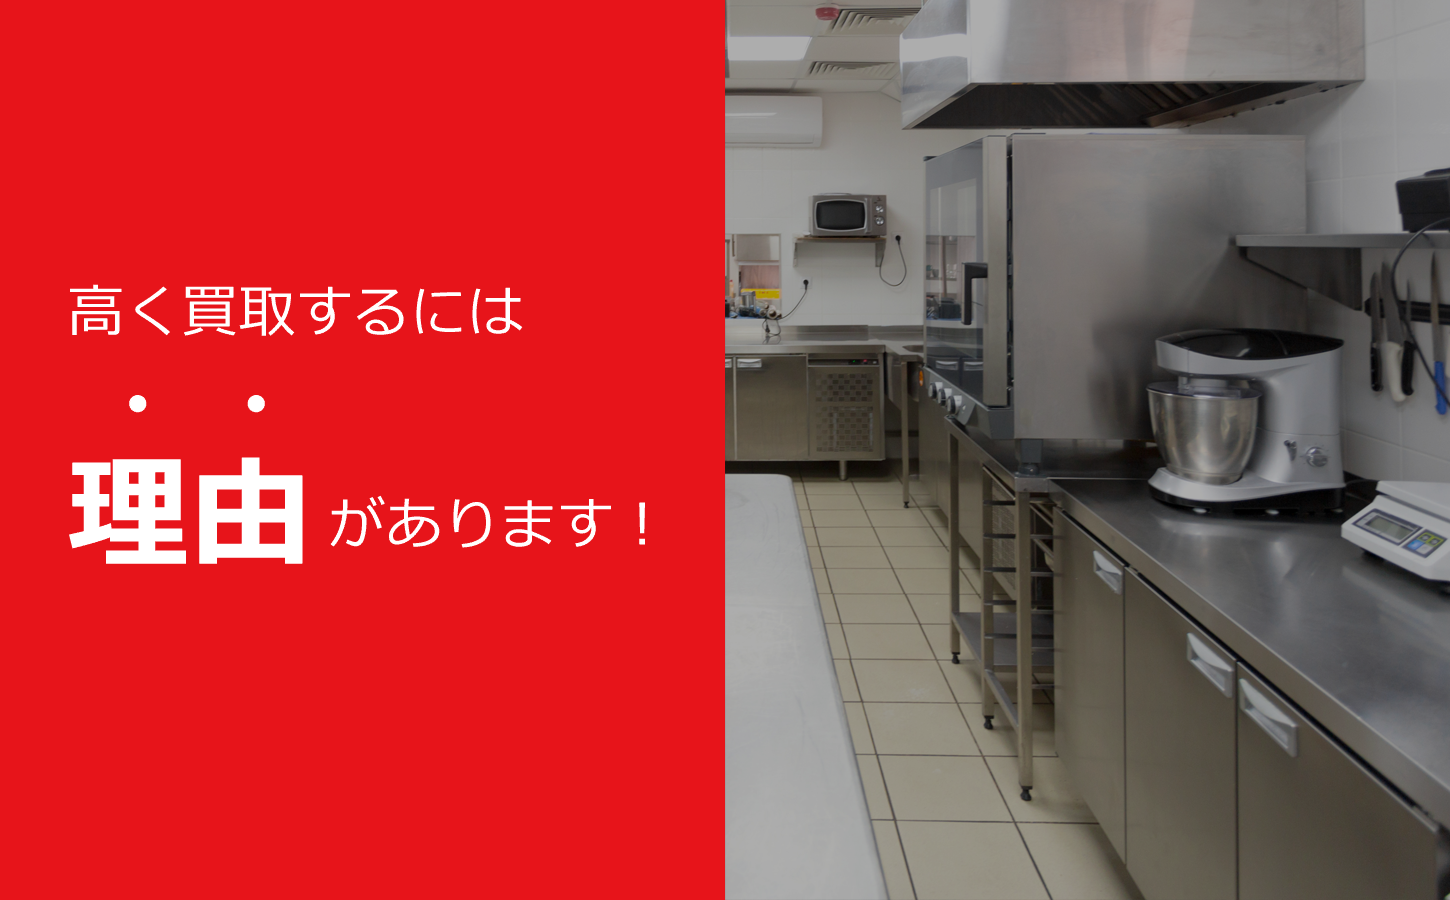 神戸市・兵庫県で厨房機器や店舗用品を出張買取するリサイクルショップ